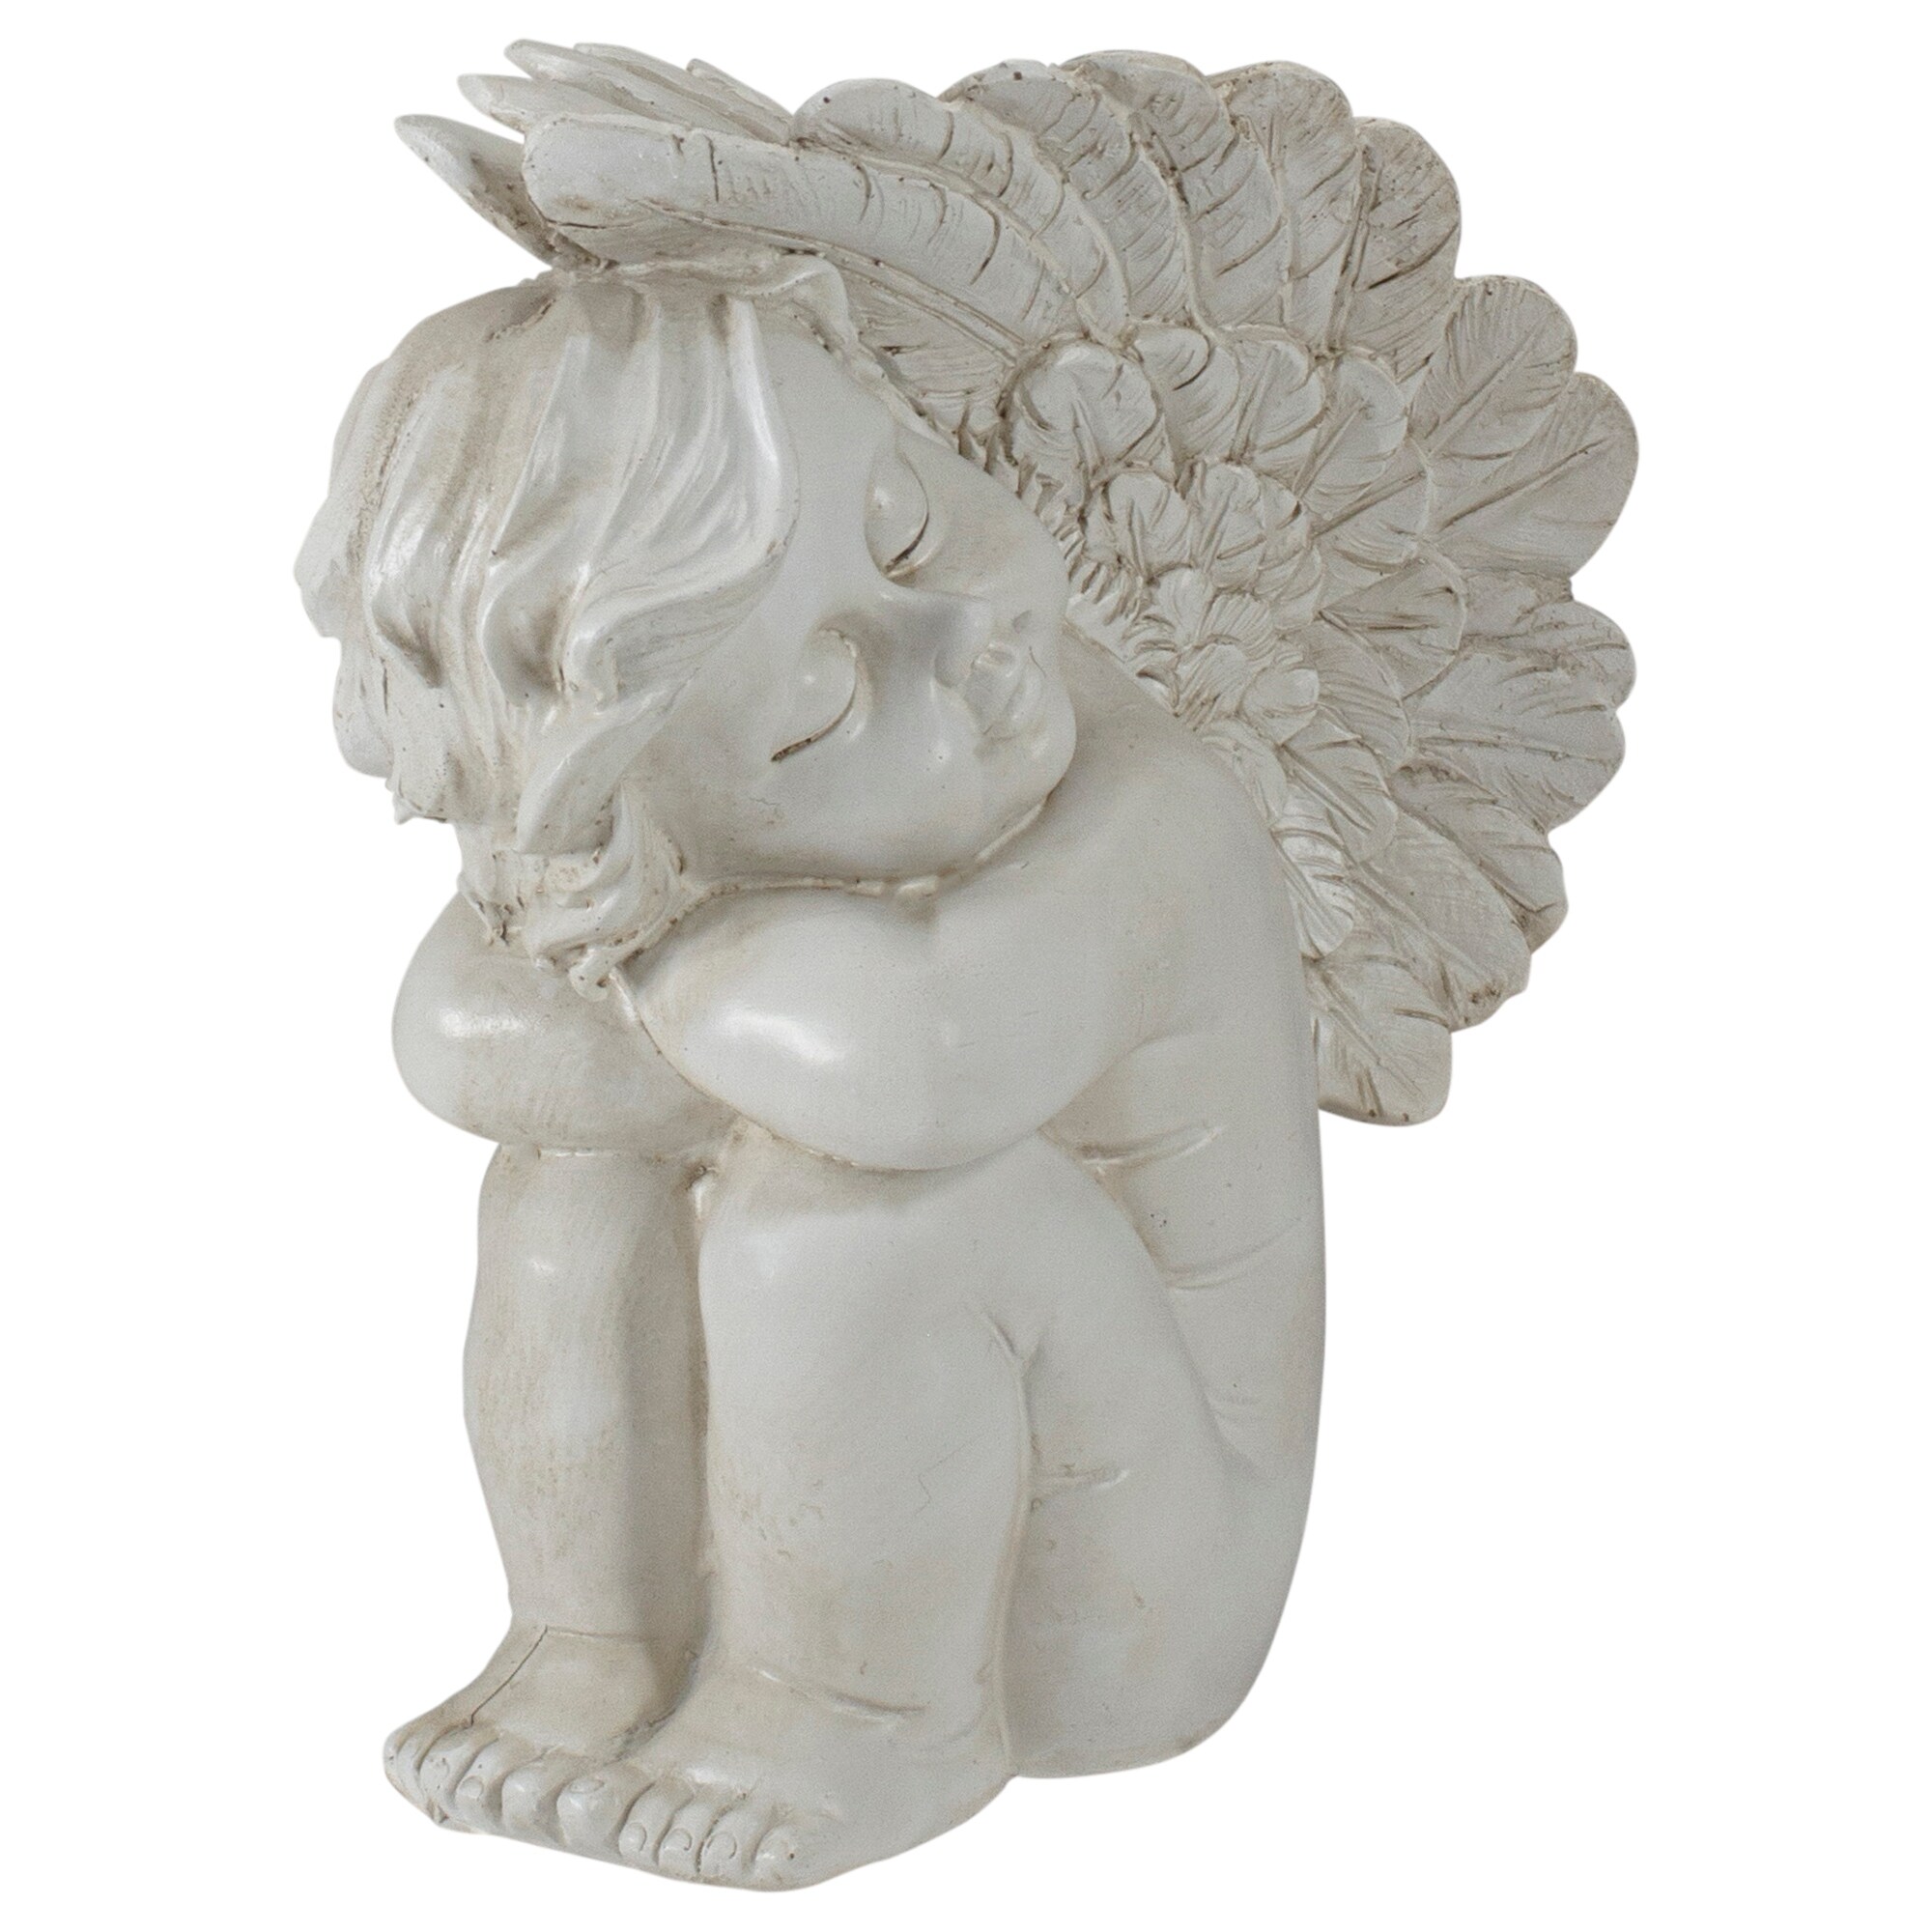 7.5" Ivory Left Facing Sleeping Cherub Angel Outdoor Garden Statue - image 3 of 5